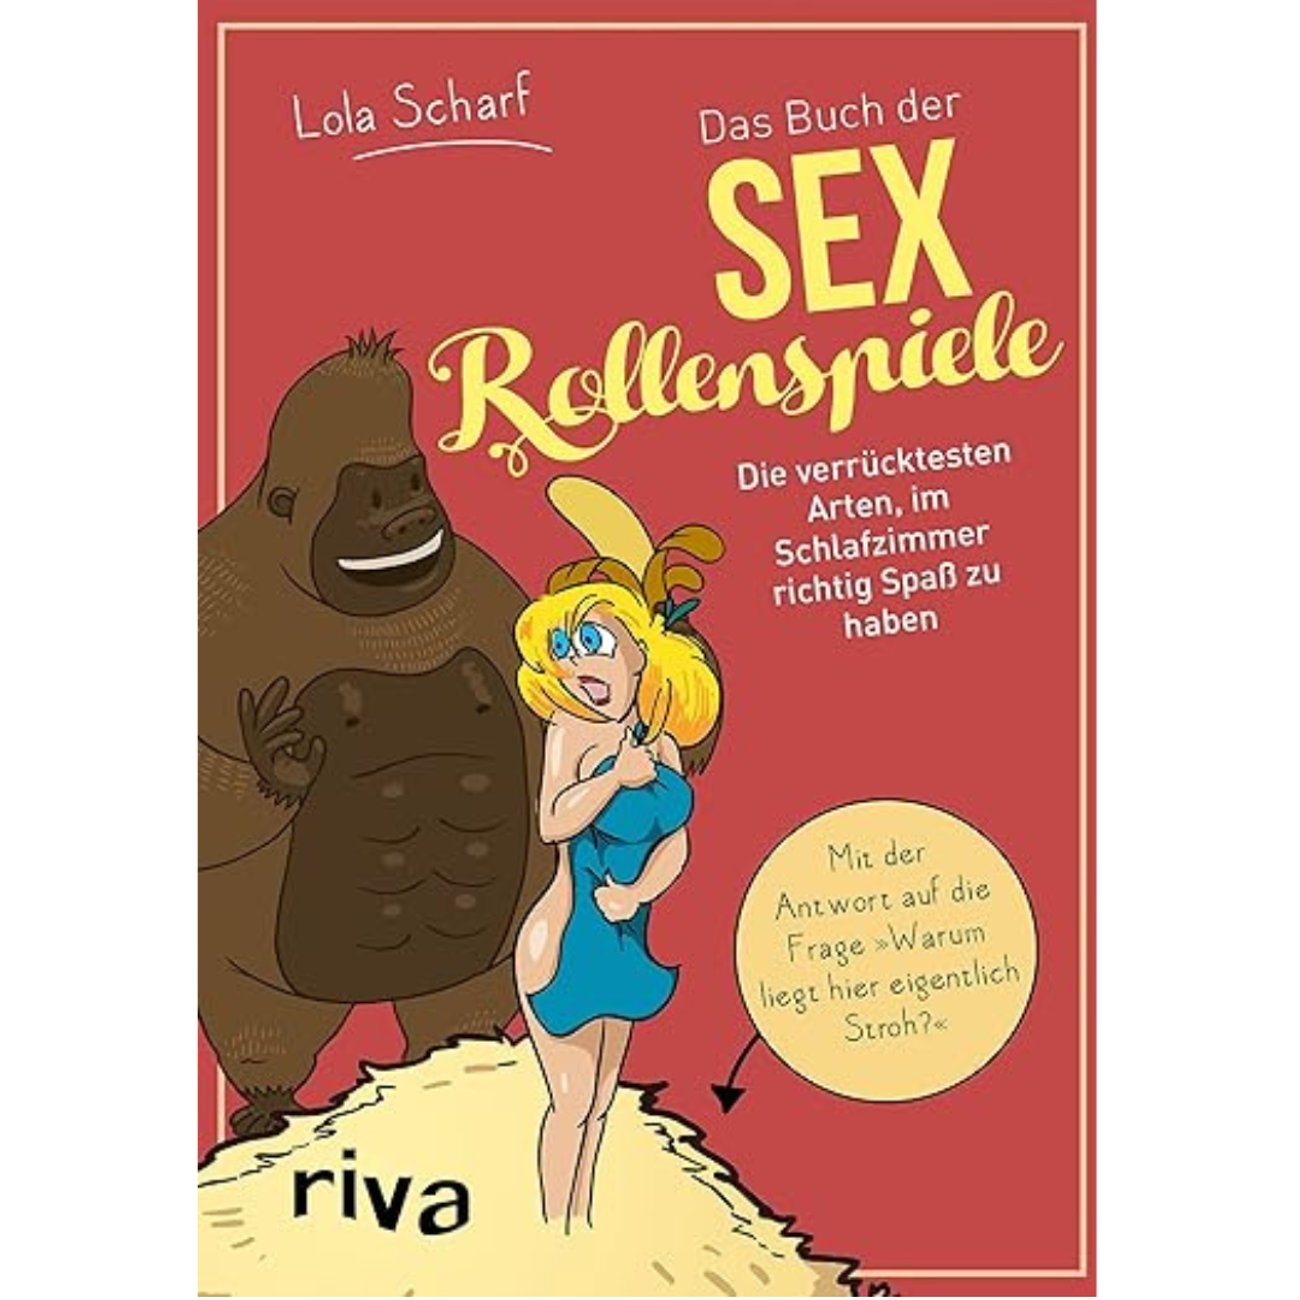 Das Buch der Sexrollenspiele